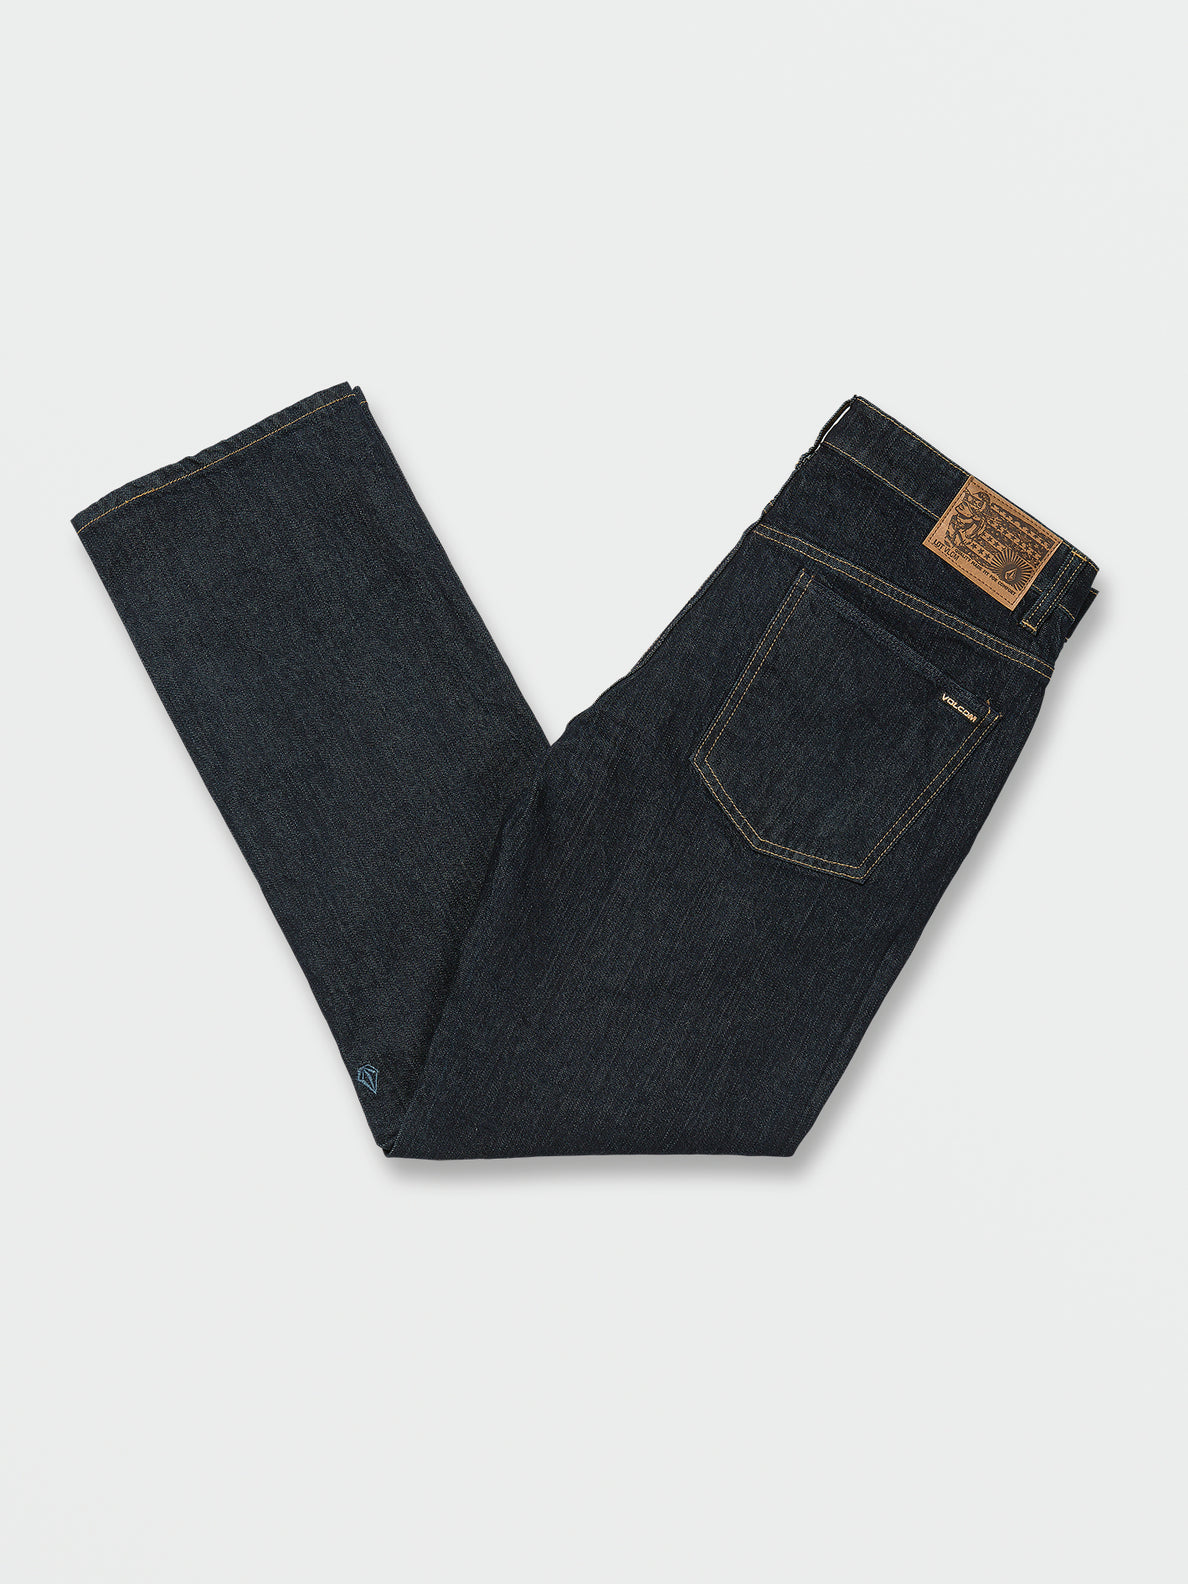 Volcom Brand Jeans – Volcom Canada